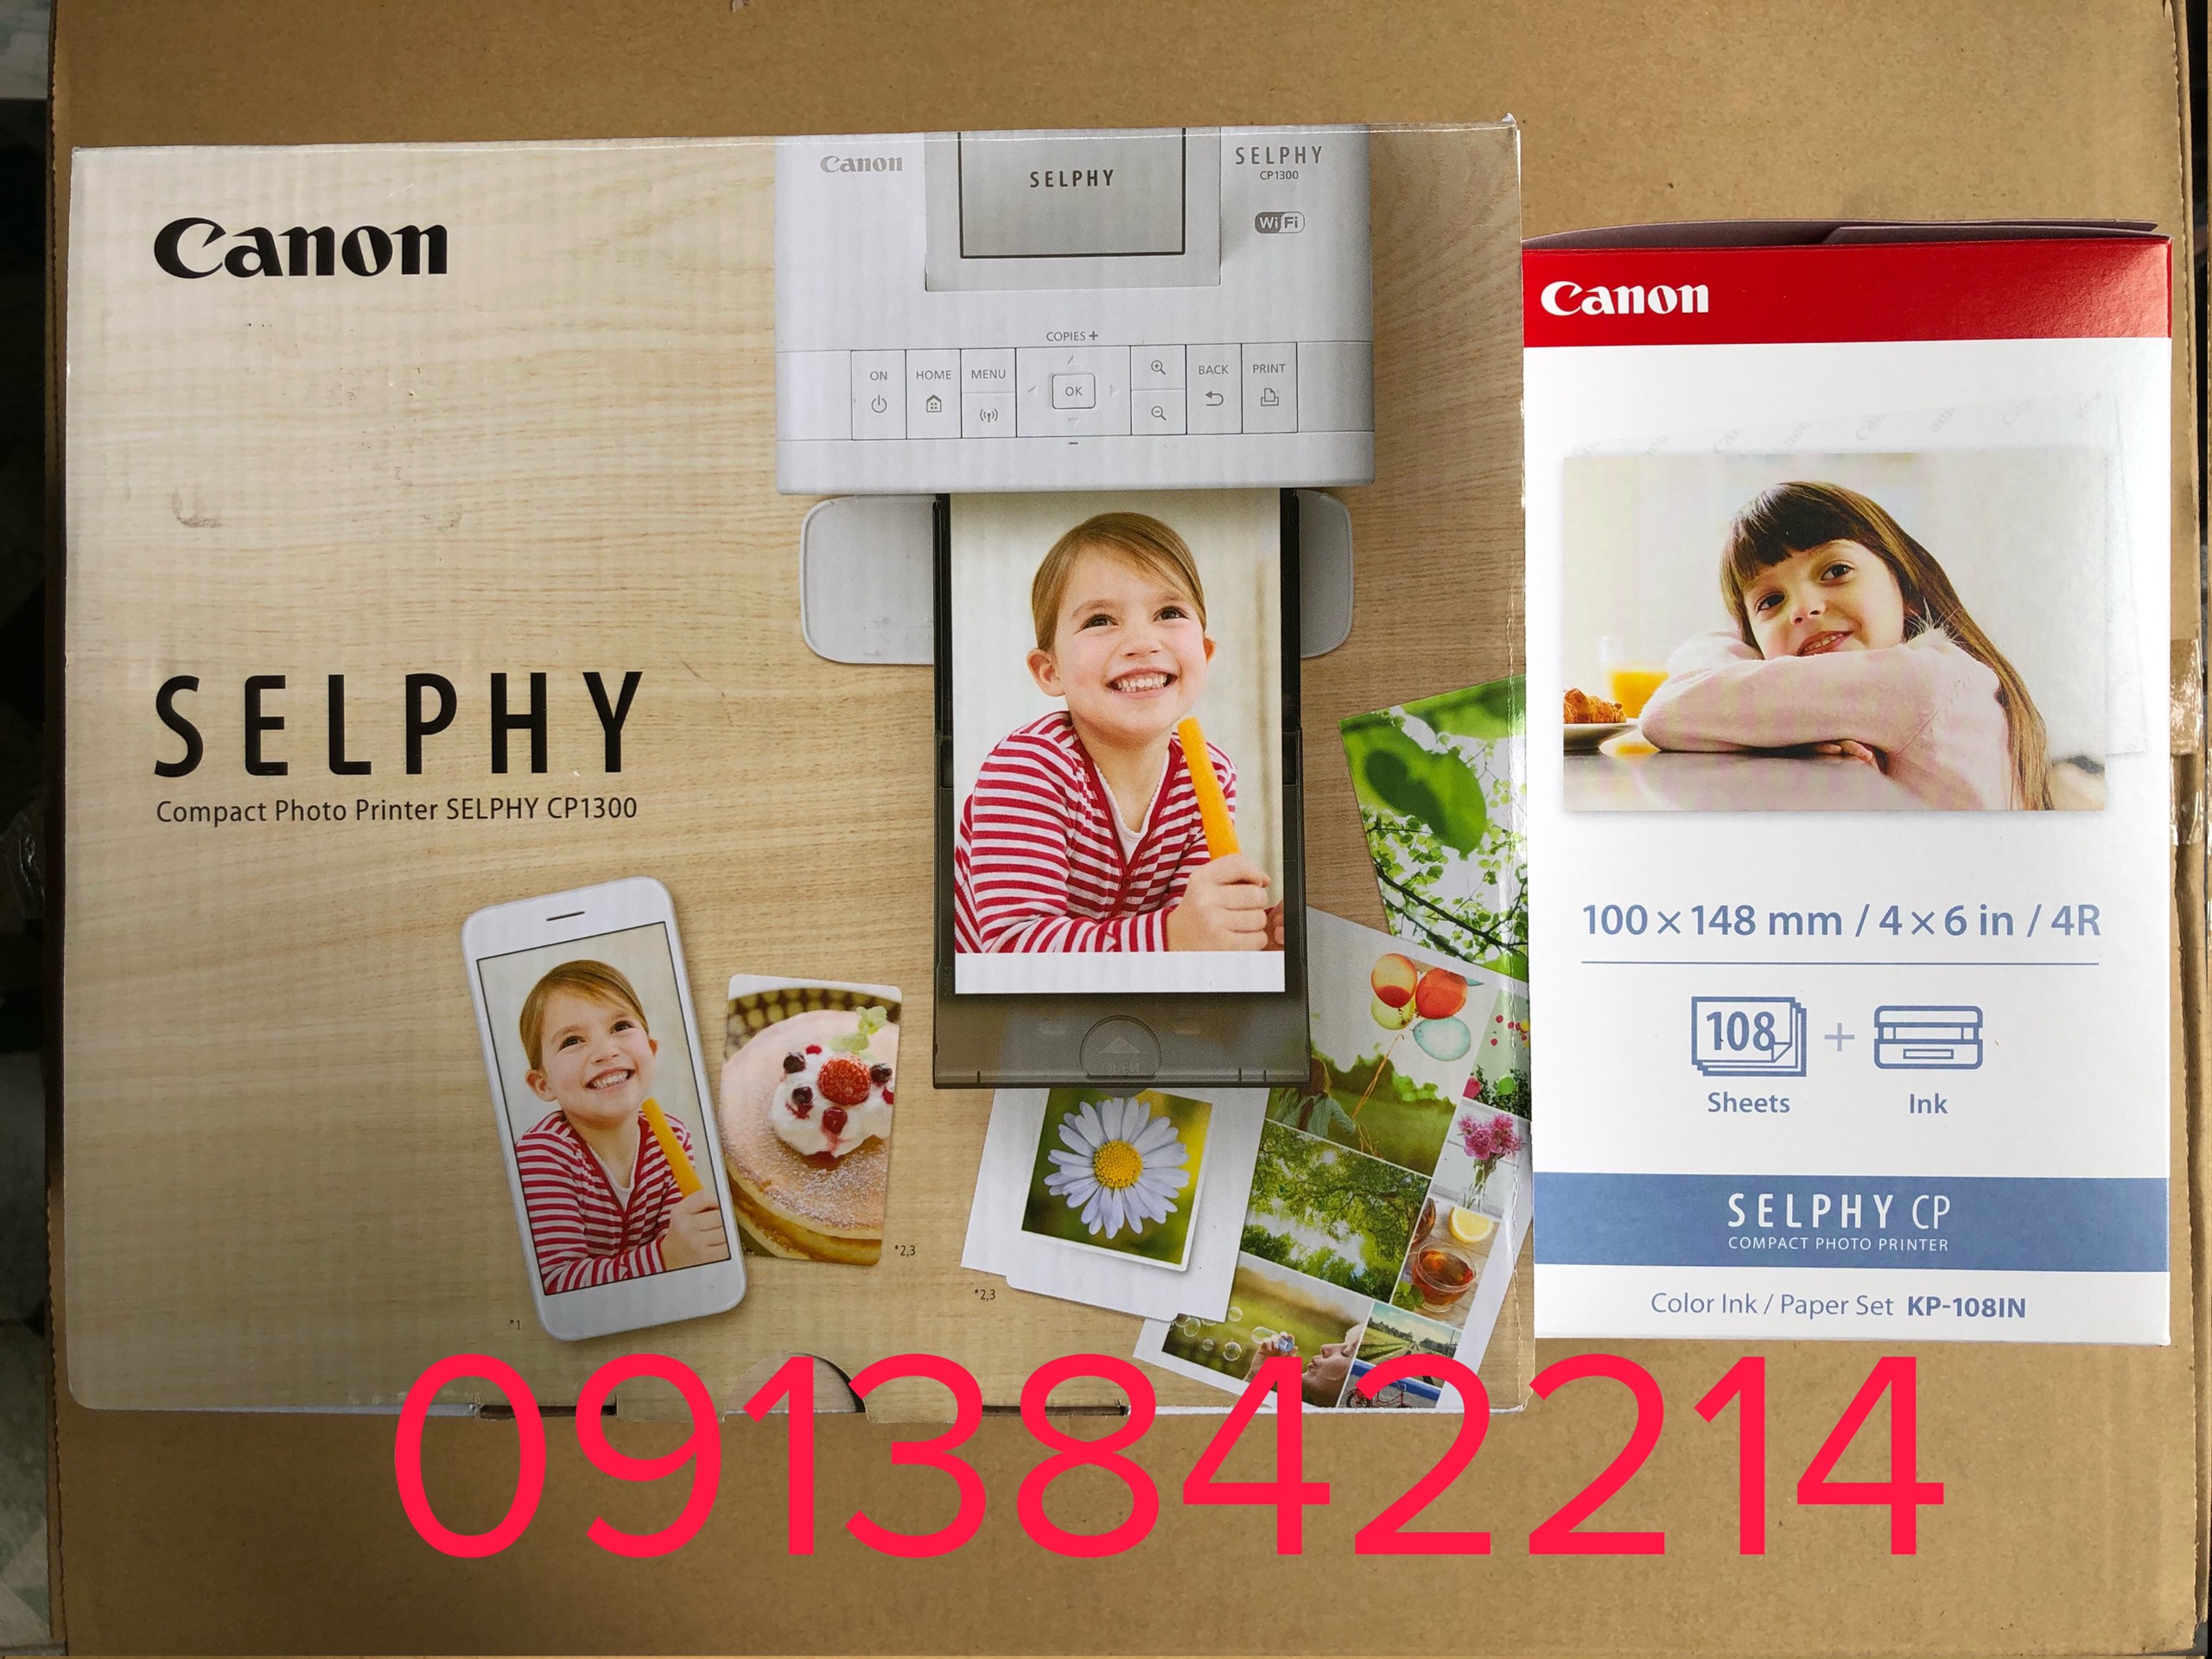 Máy in ảnh Canon CP1300 wifi new (shelphy cp1300)+ 3 hộp mực và 108 tờ giấy cumbo